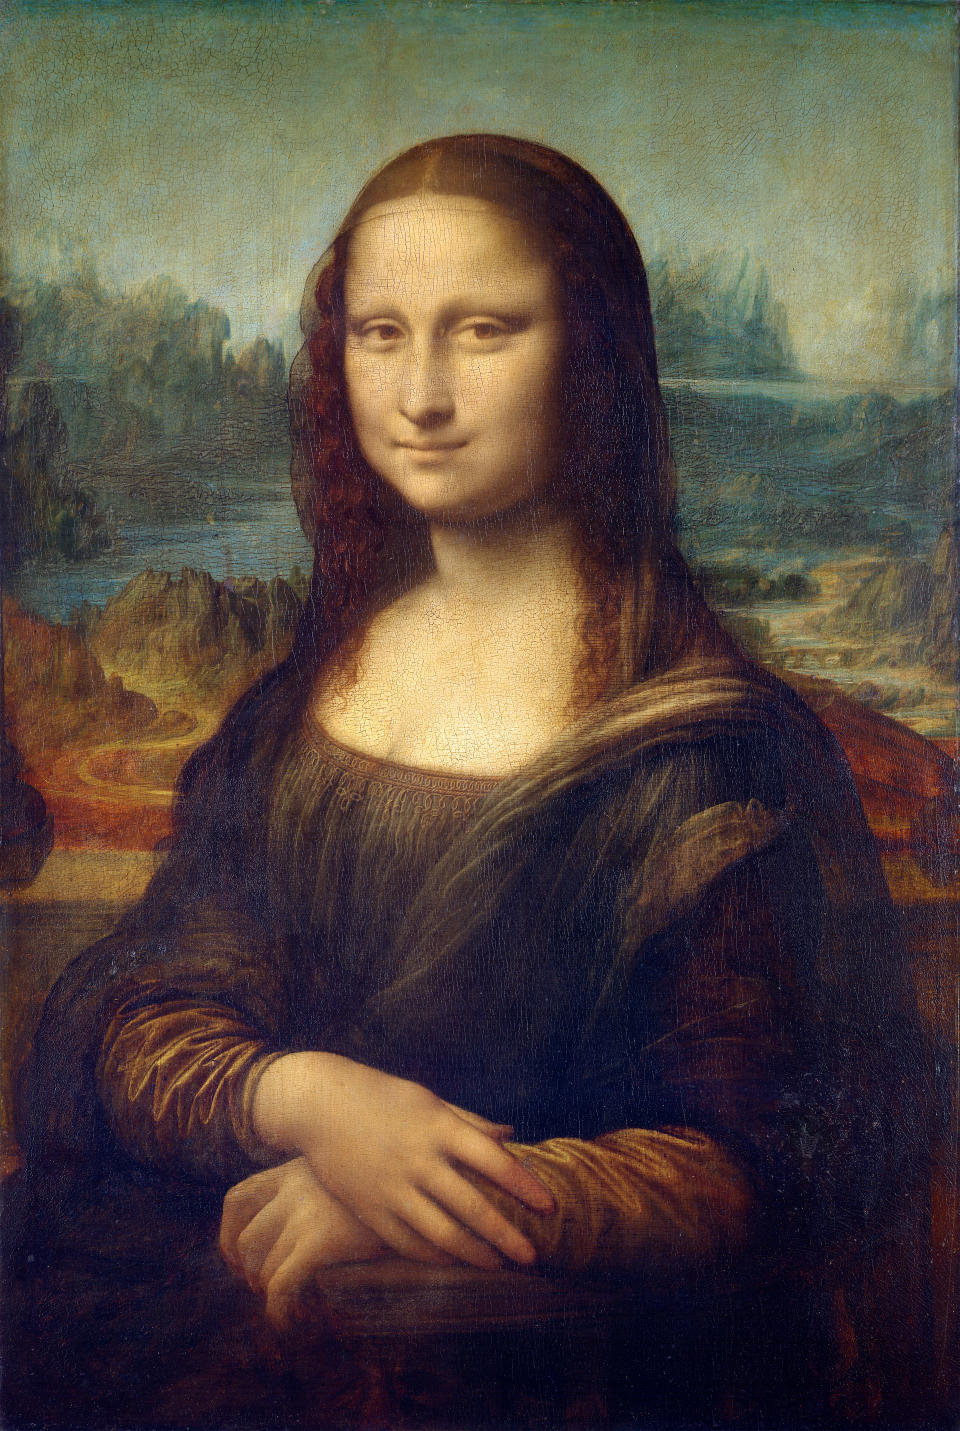 Retrato de Mona Lisa pintado al óleo por Leonardo da Vinci entre 1503 y 1506.